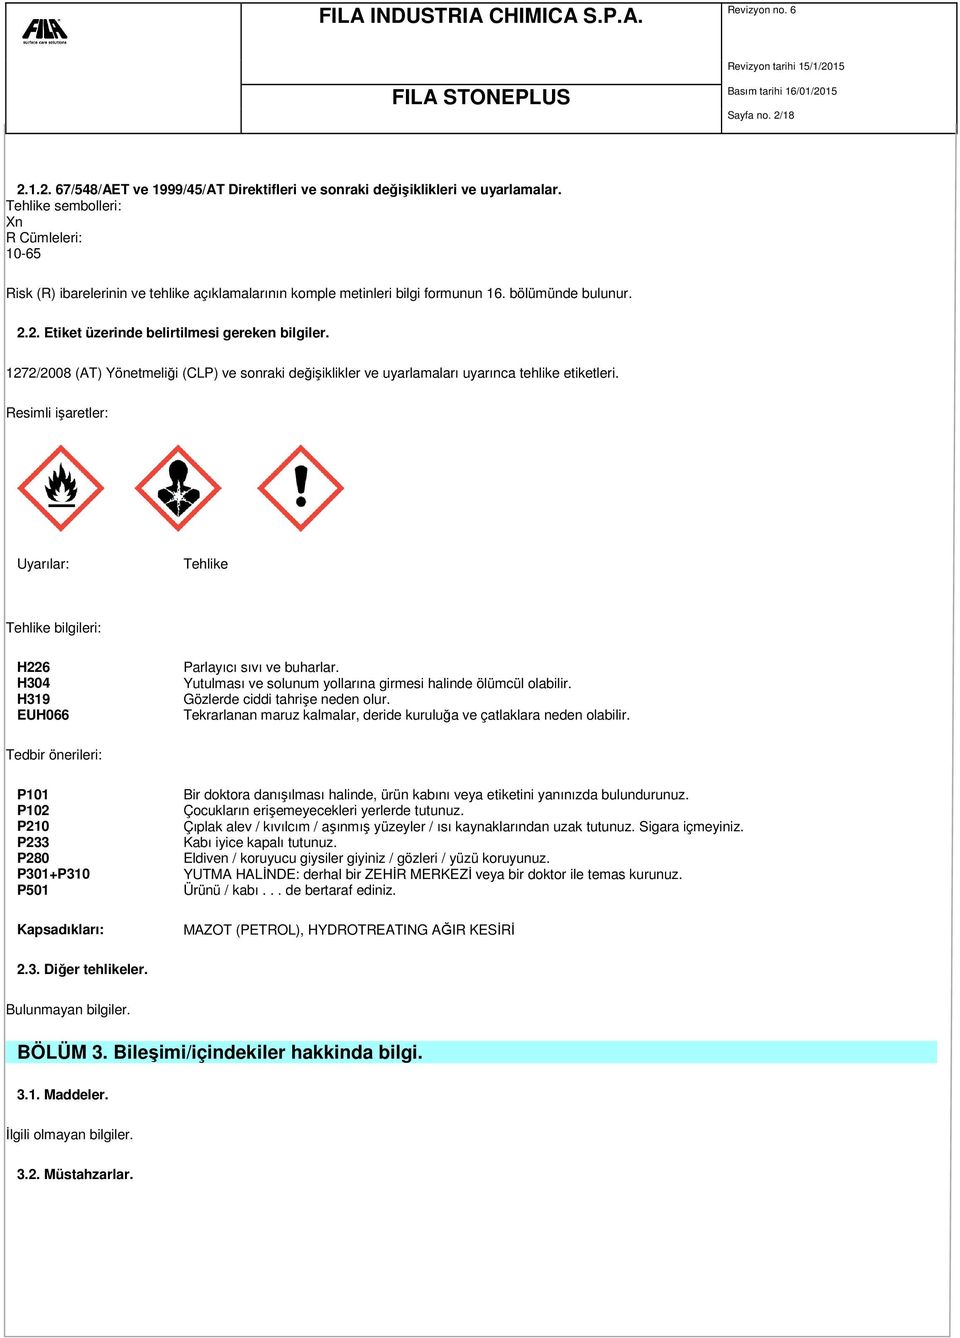 1272/2008 (AT) Yönetmeliği (CLP) ve sonraki değişiklikler ve uyarlamaları uyarınca tehlike etiketleri.